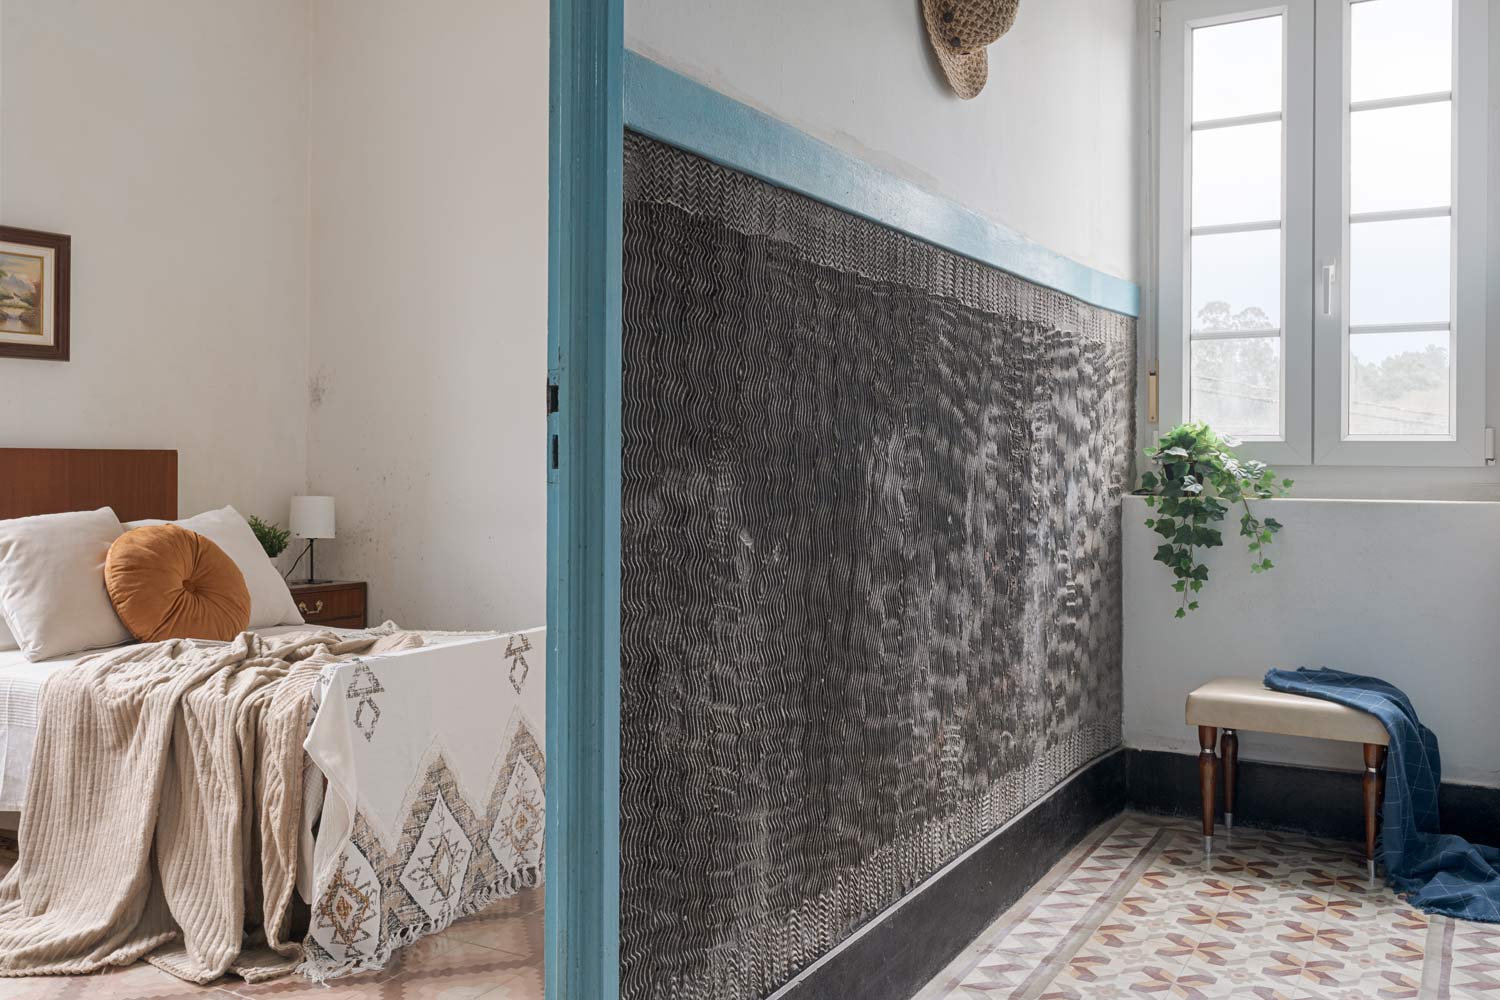 Dormitorio acogedor con cama de madera, detalles decorativos en tonos neutros y luz natural entrando por la ventana, en una casa de Bergondo, A Coruña.